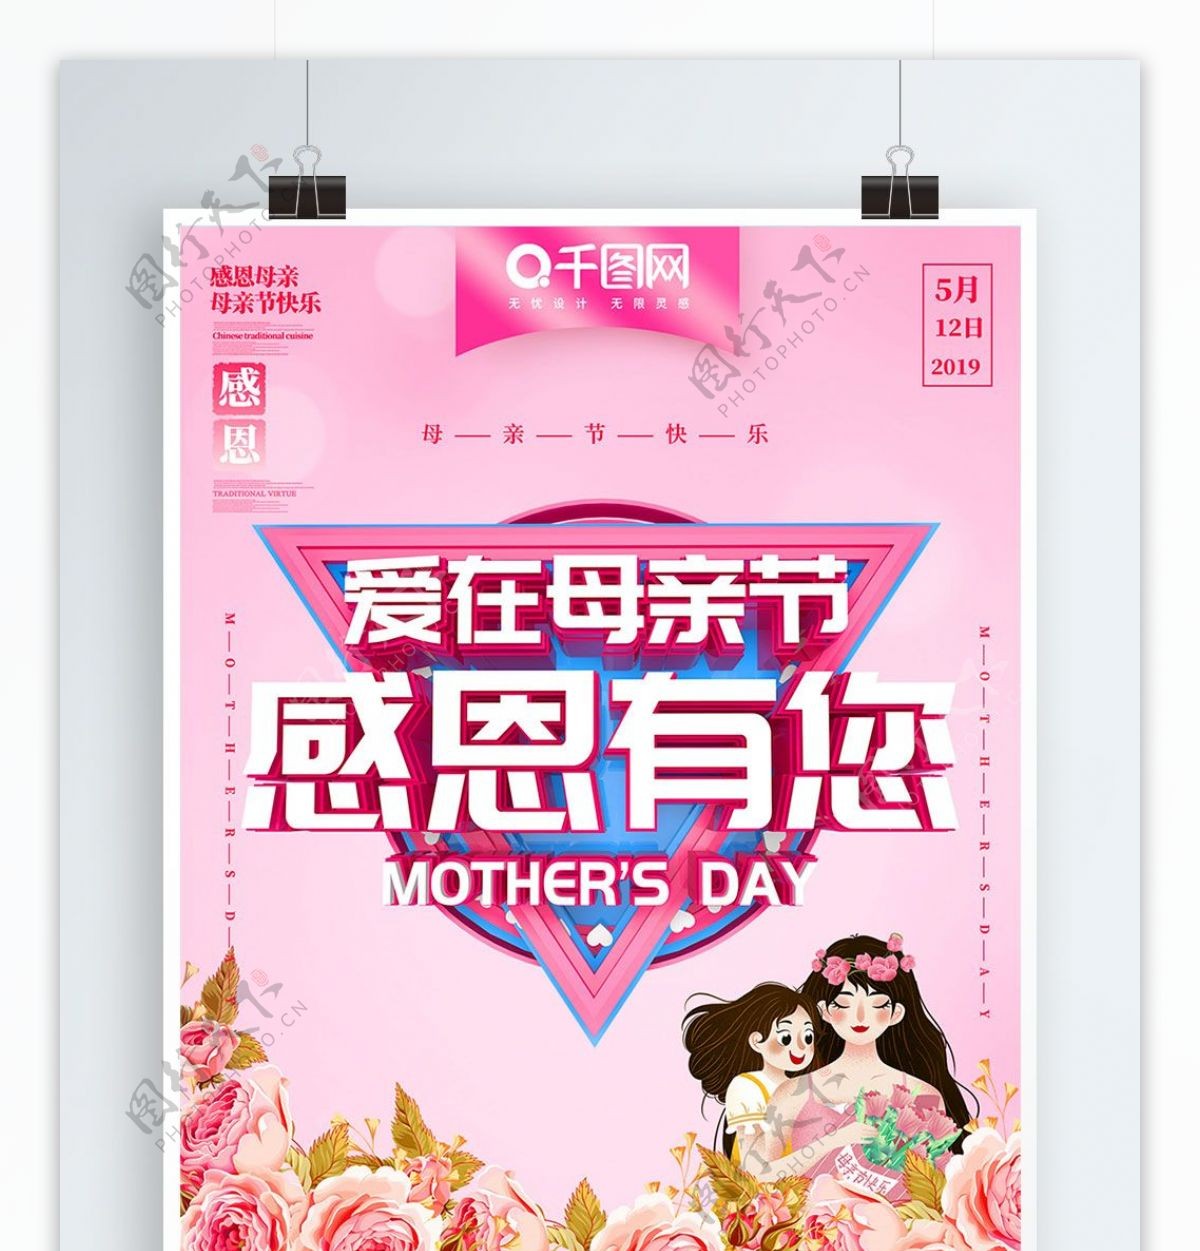 母亲节节日主题海报